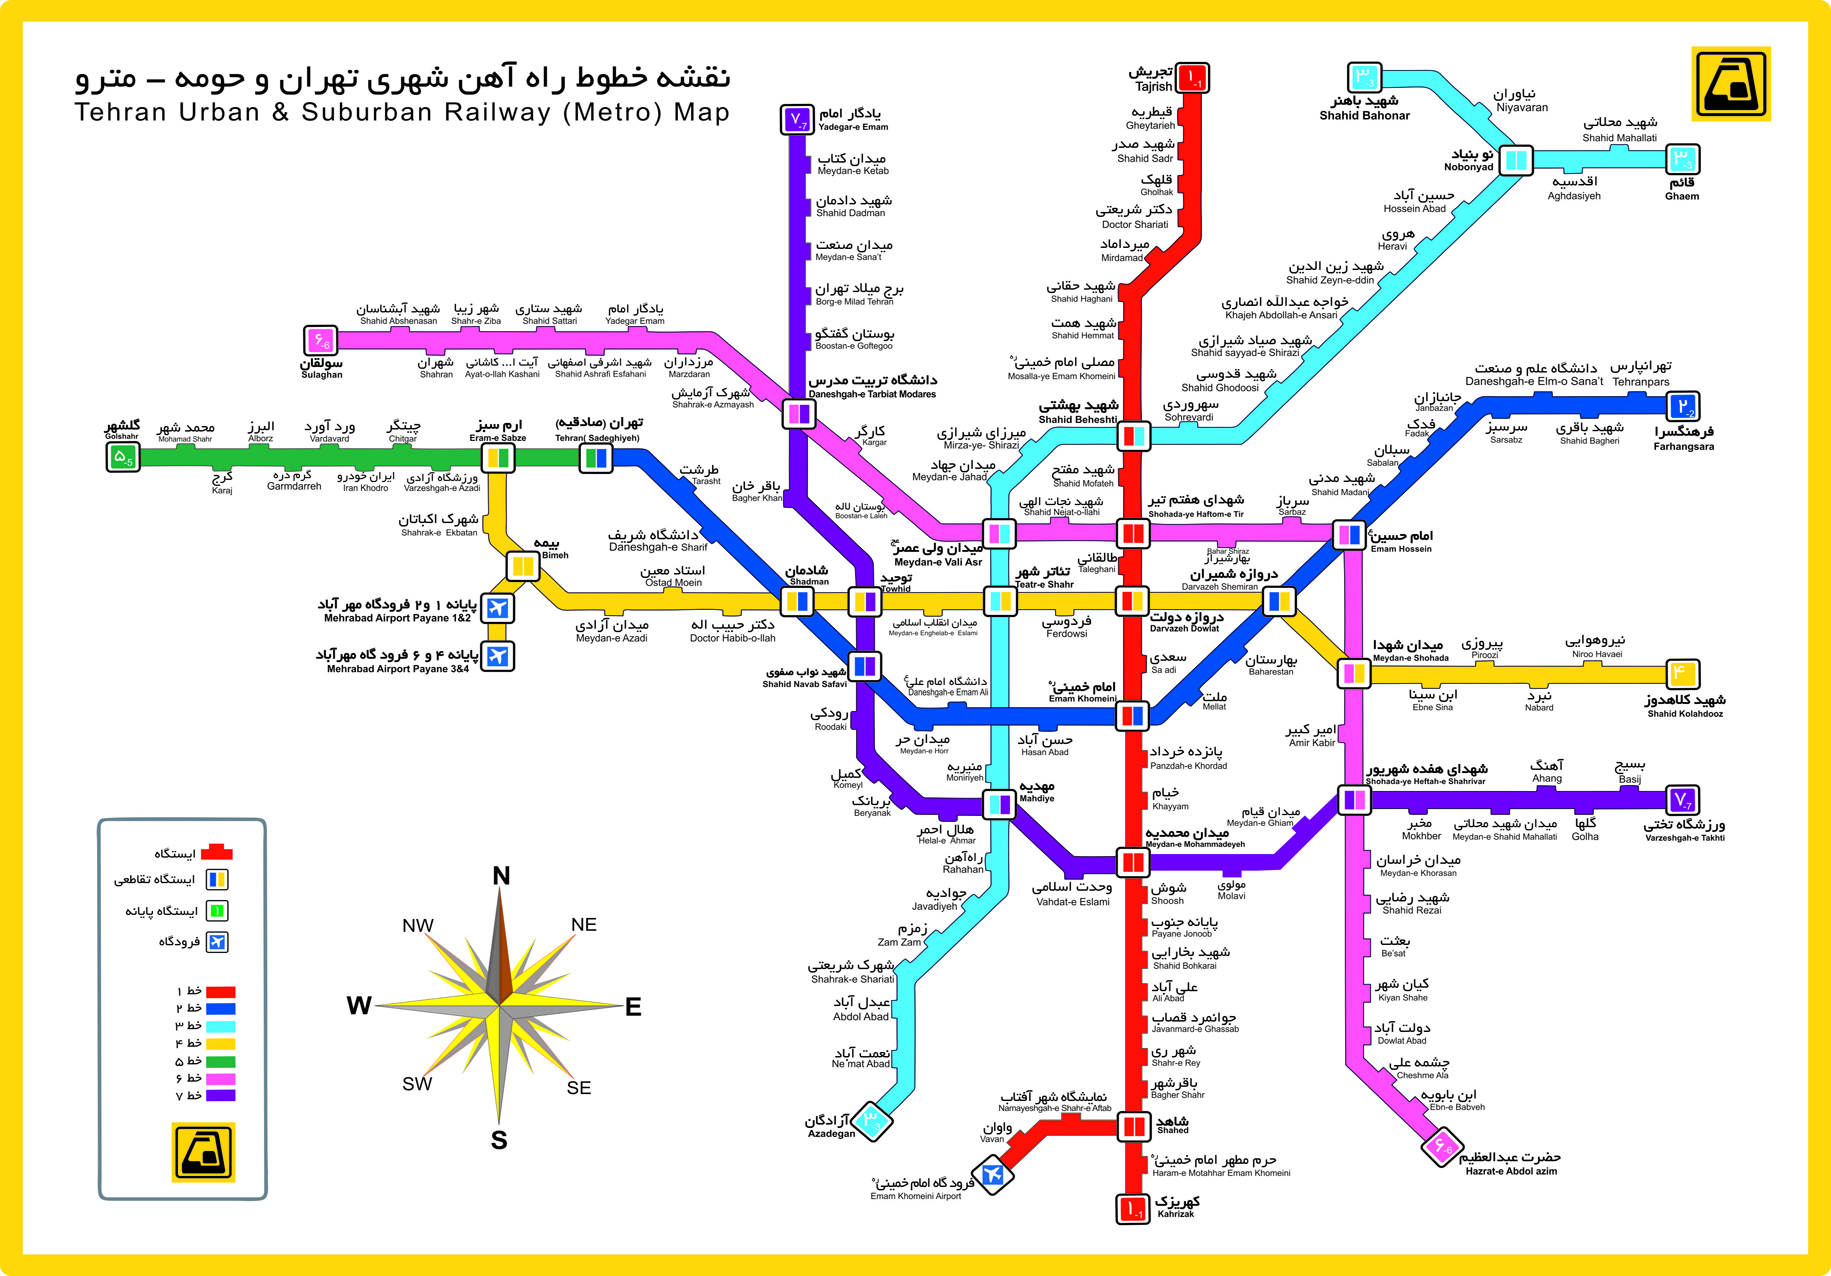 تصویر کامل نقشه مترو تهران
